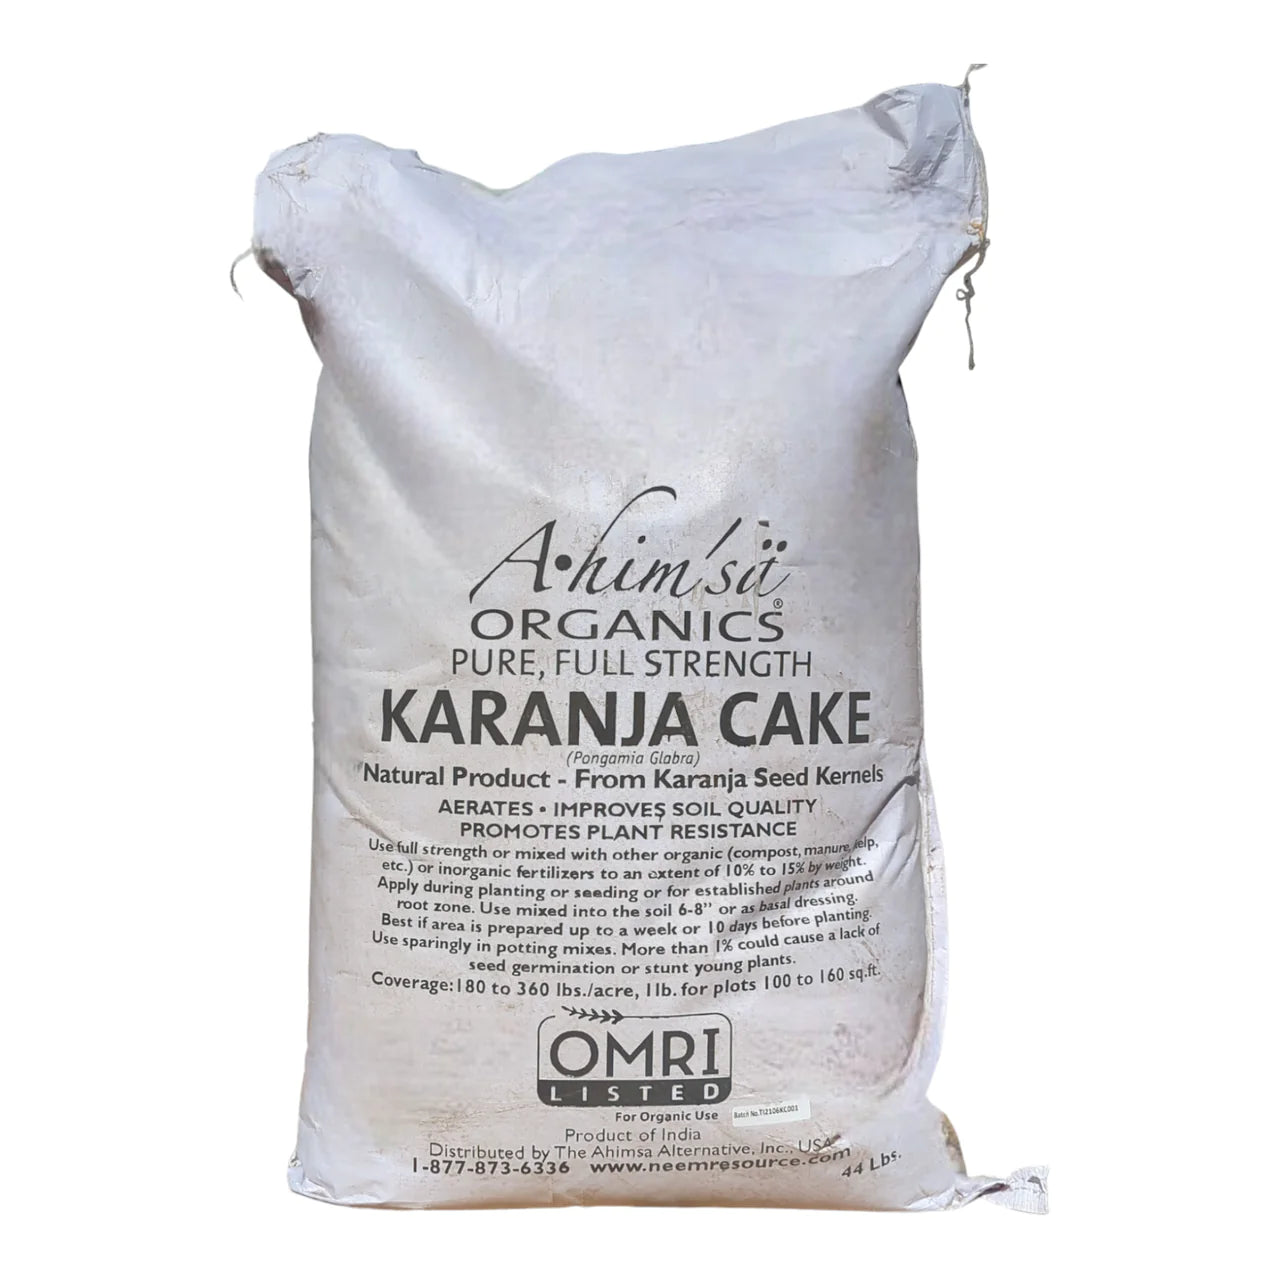 Karanja Cake (Ahimsa Organics) (OMRI Listed)